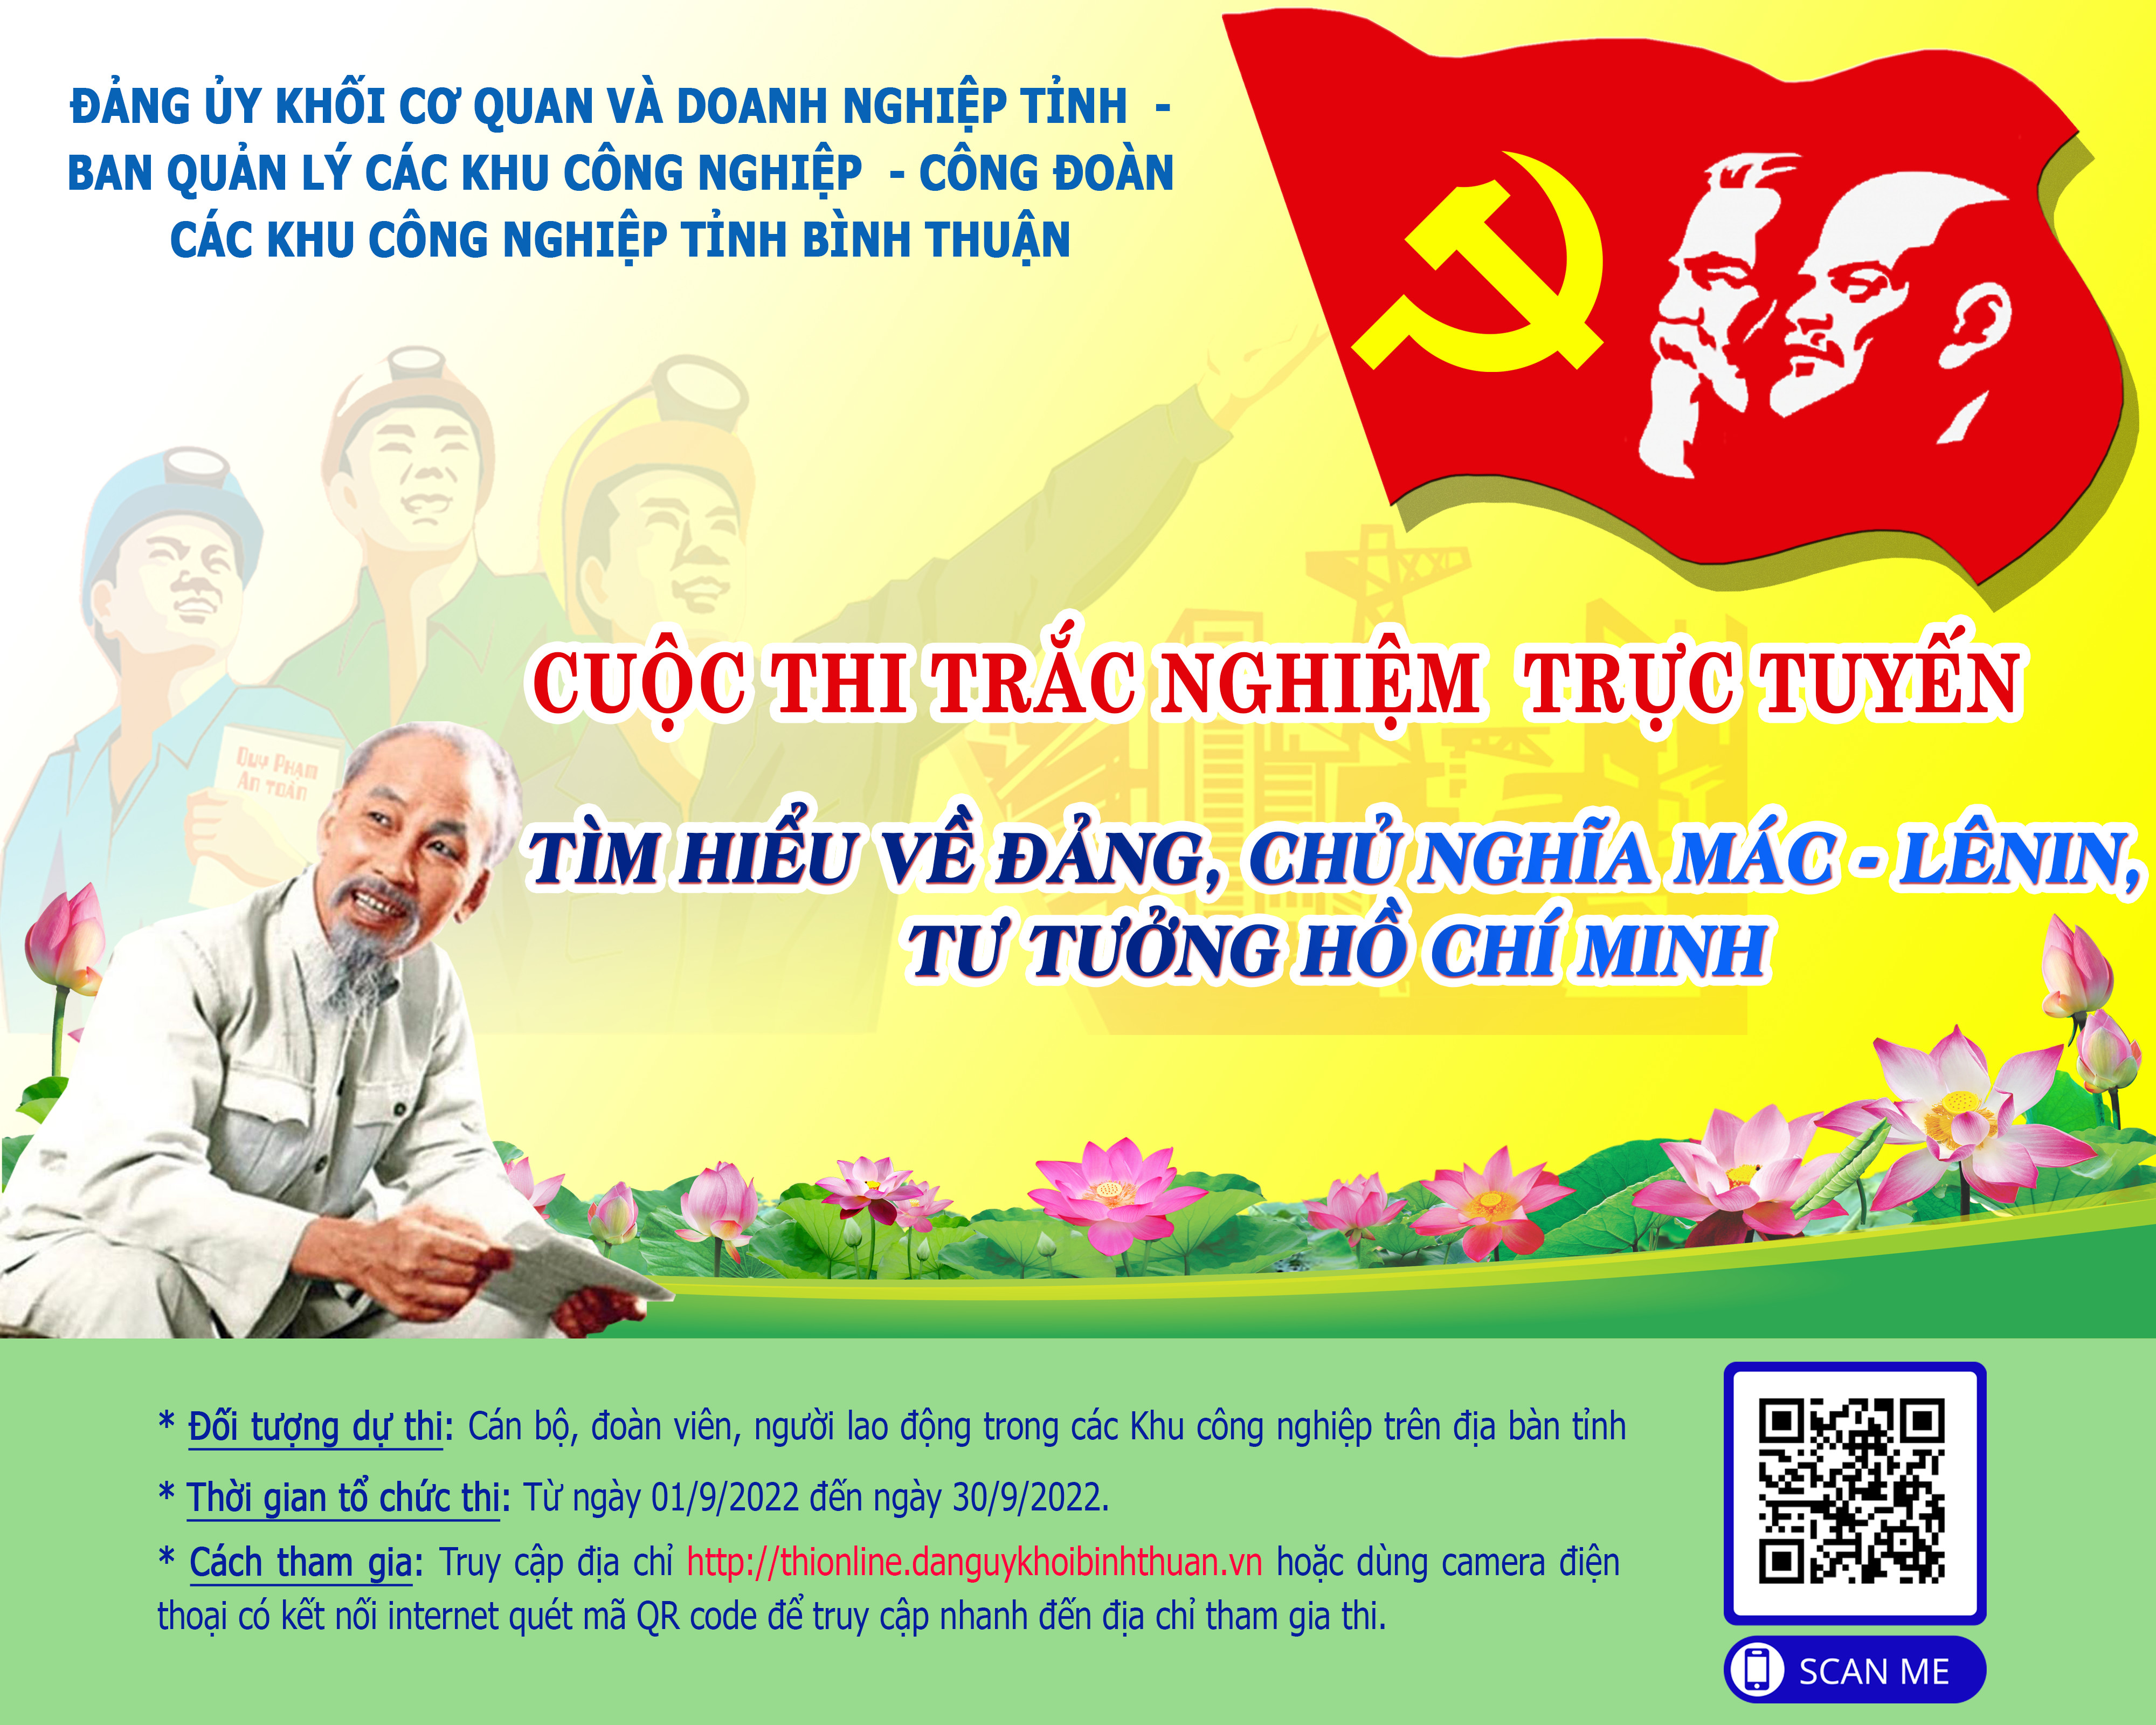 Cuộc thi trác nghiệm trực tuyến tìm hiểu về Đảng, Chủ nghĩa Mác - Lênin, Tư tưởng Hồ Chí Minh cho cán bộ, đoàn viên, người lao động trong các Khu công nghiệp